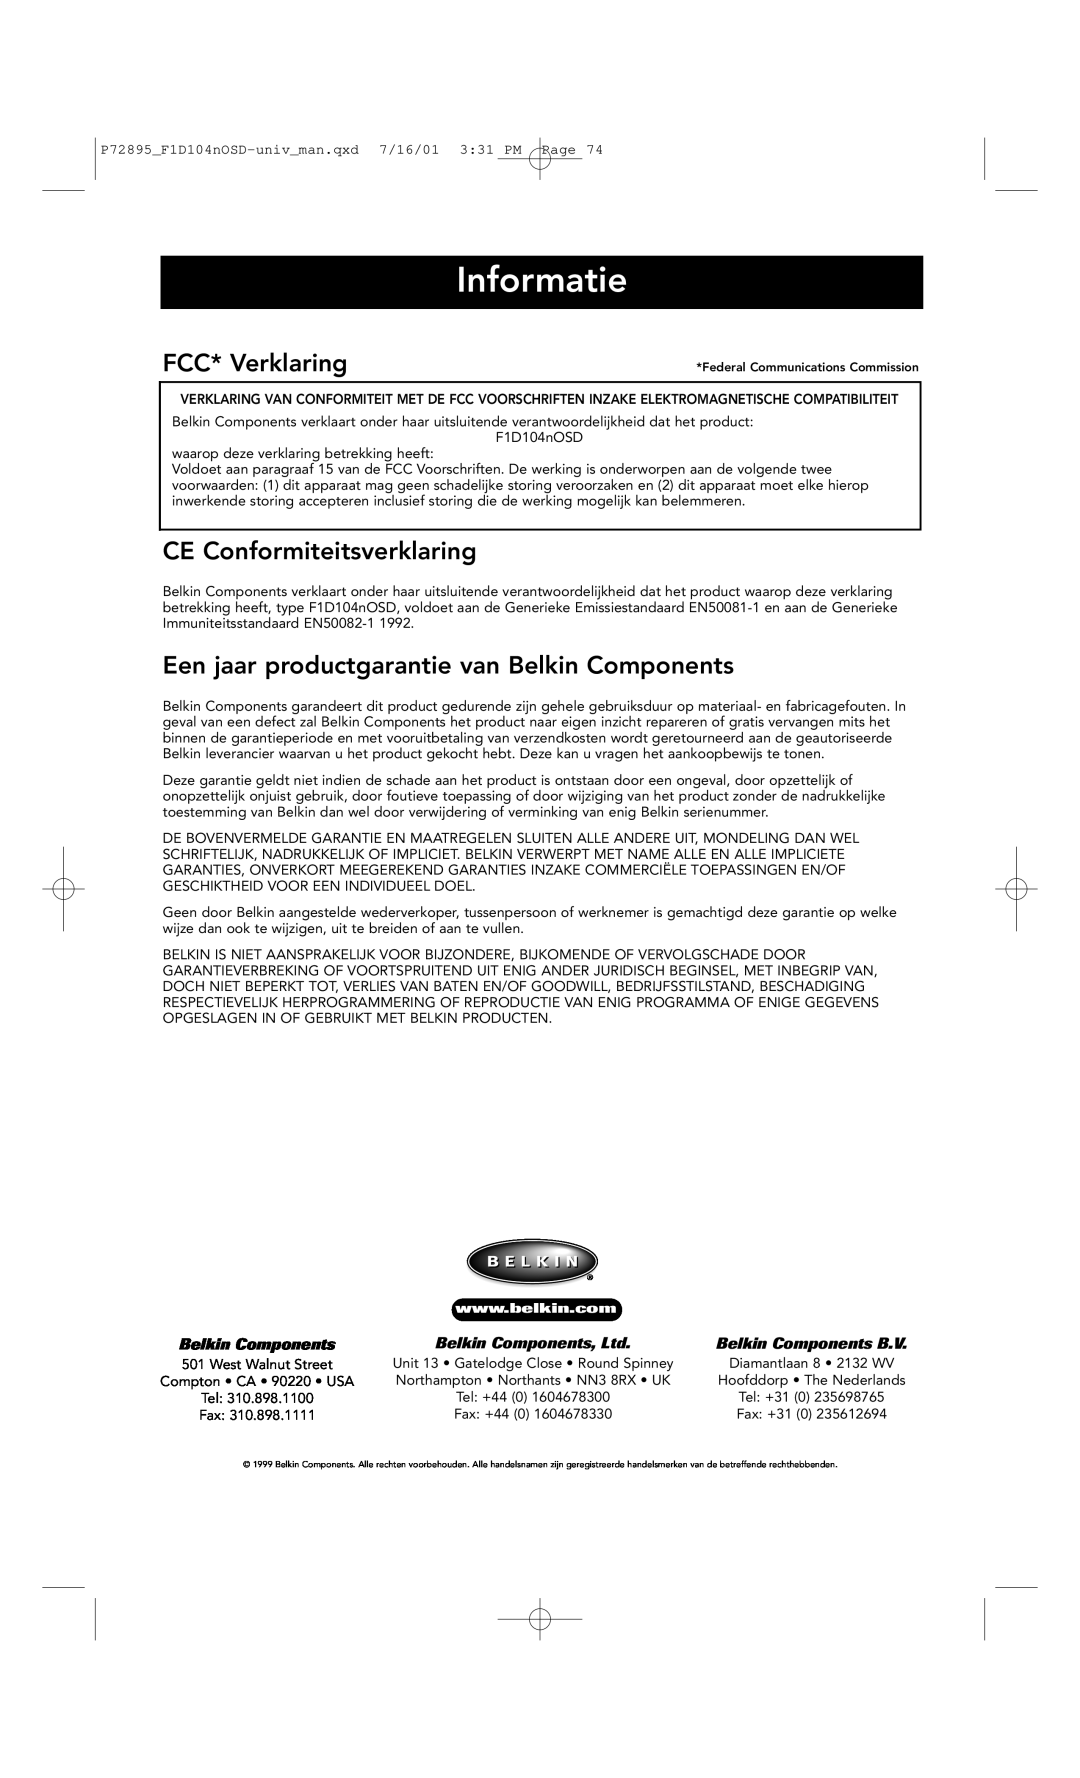 Belkin F1D104-OSD Informatie, FCC* Verklaring, CE Conformiteitsverklaring, Een jaar productgarantie van Belkin Components 